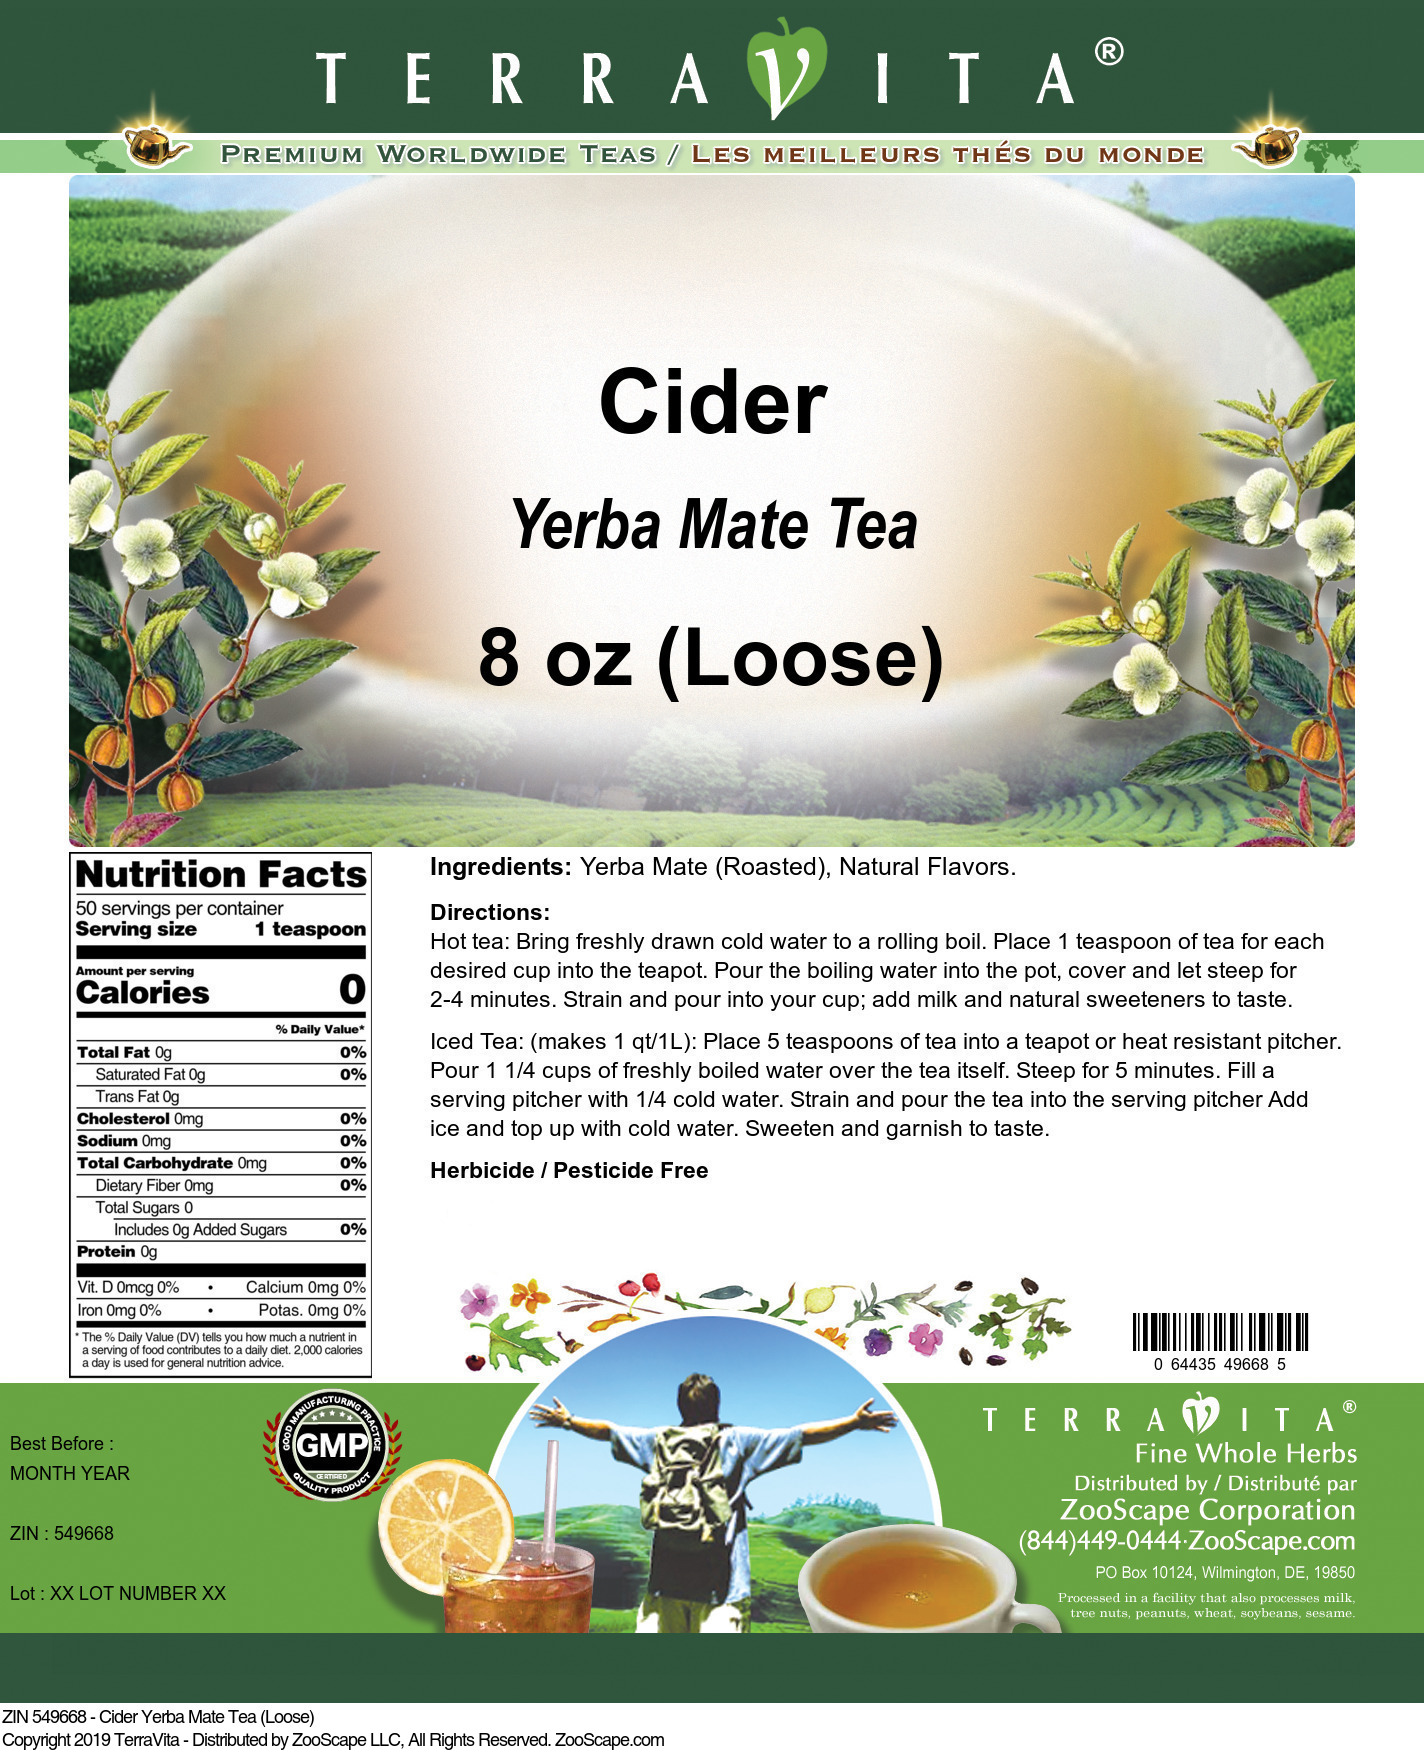 Cider Yerba Mate Tea (Loose) - Label